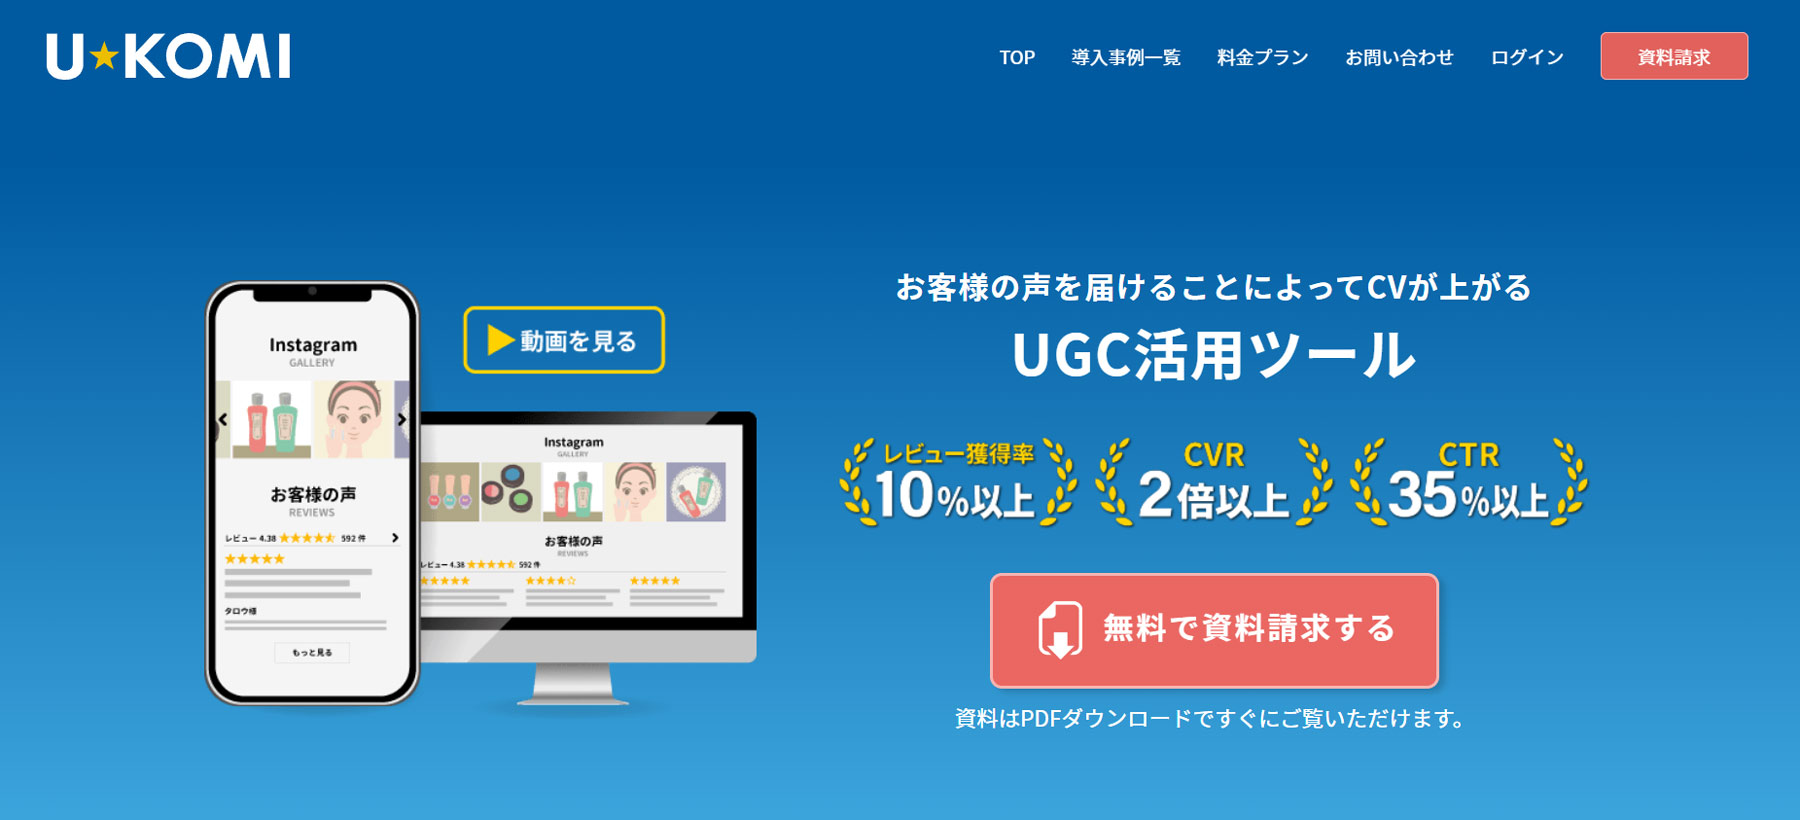 U-KOMI公式Webサイト